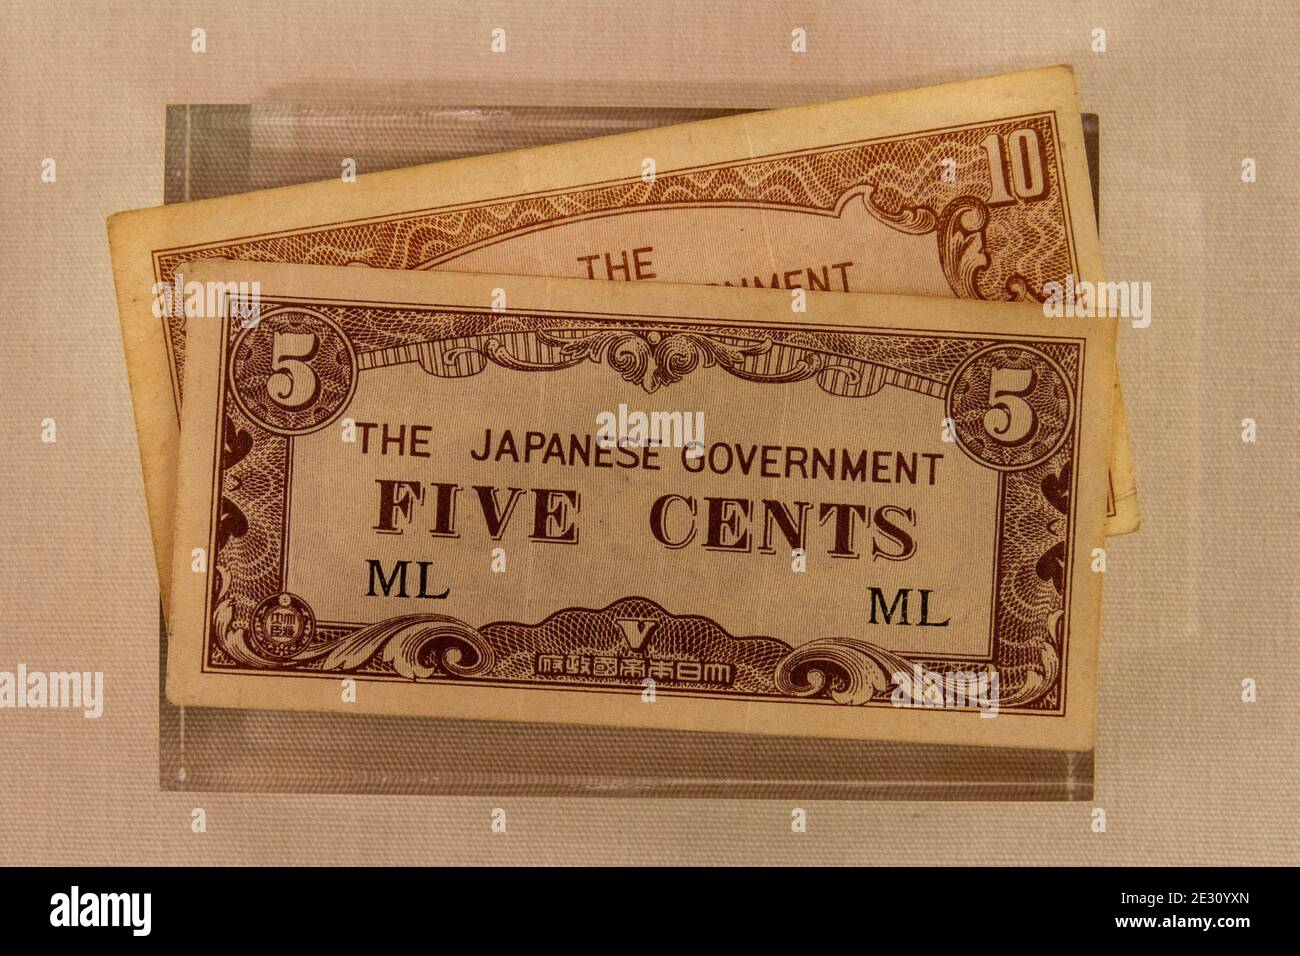 Banconota da 5 cent emessa dal governo giapponese nel 1942-45 in territorio occupato dal Giappone (ML per la Malesia), Salisbury Museum, Wiltshire, Regno Unito. Foto Stock